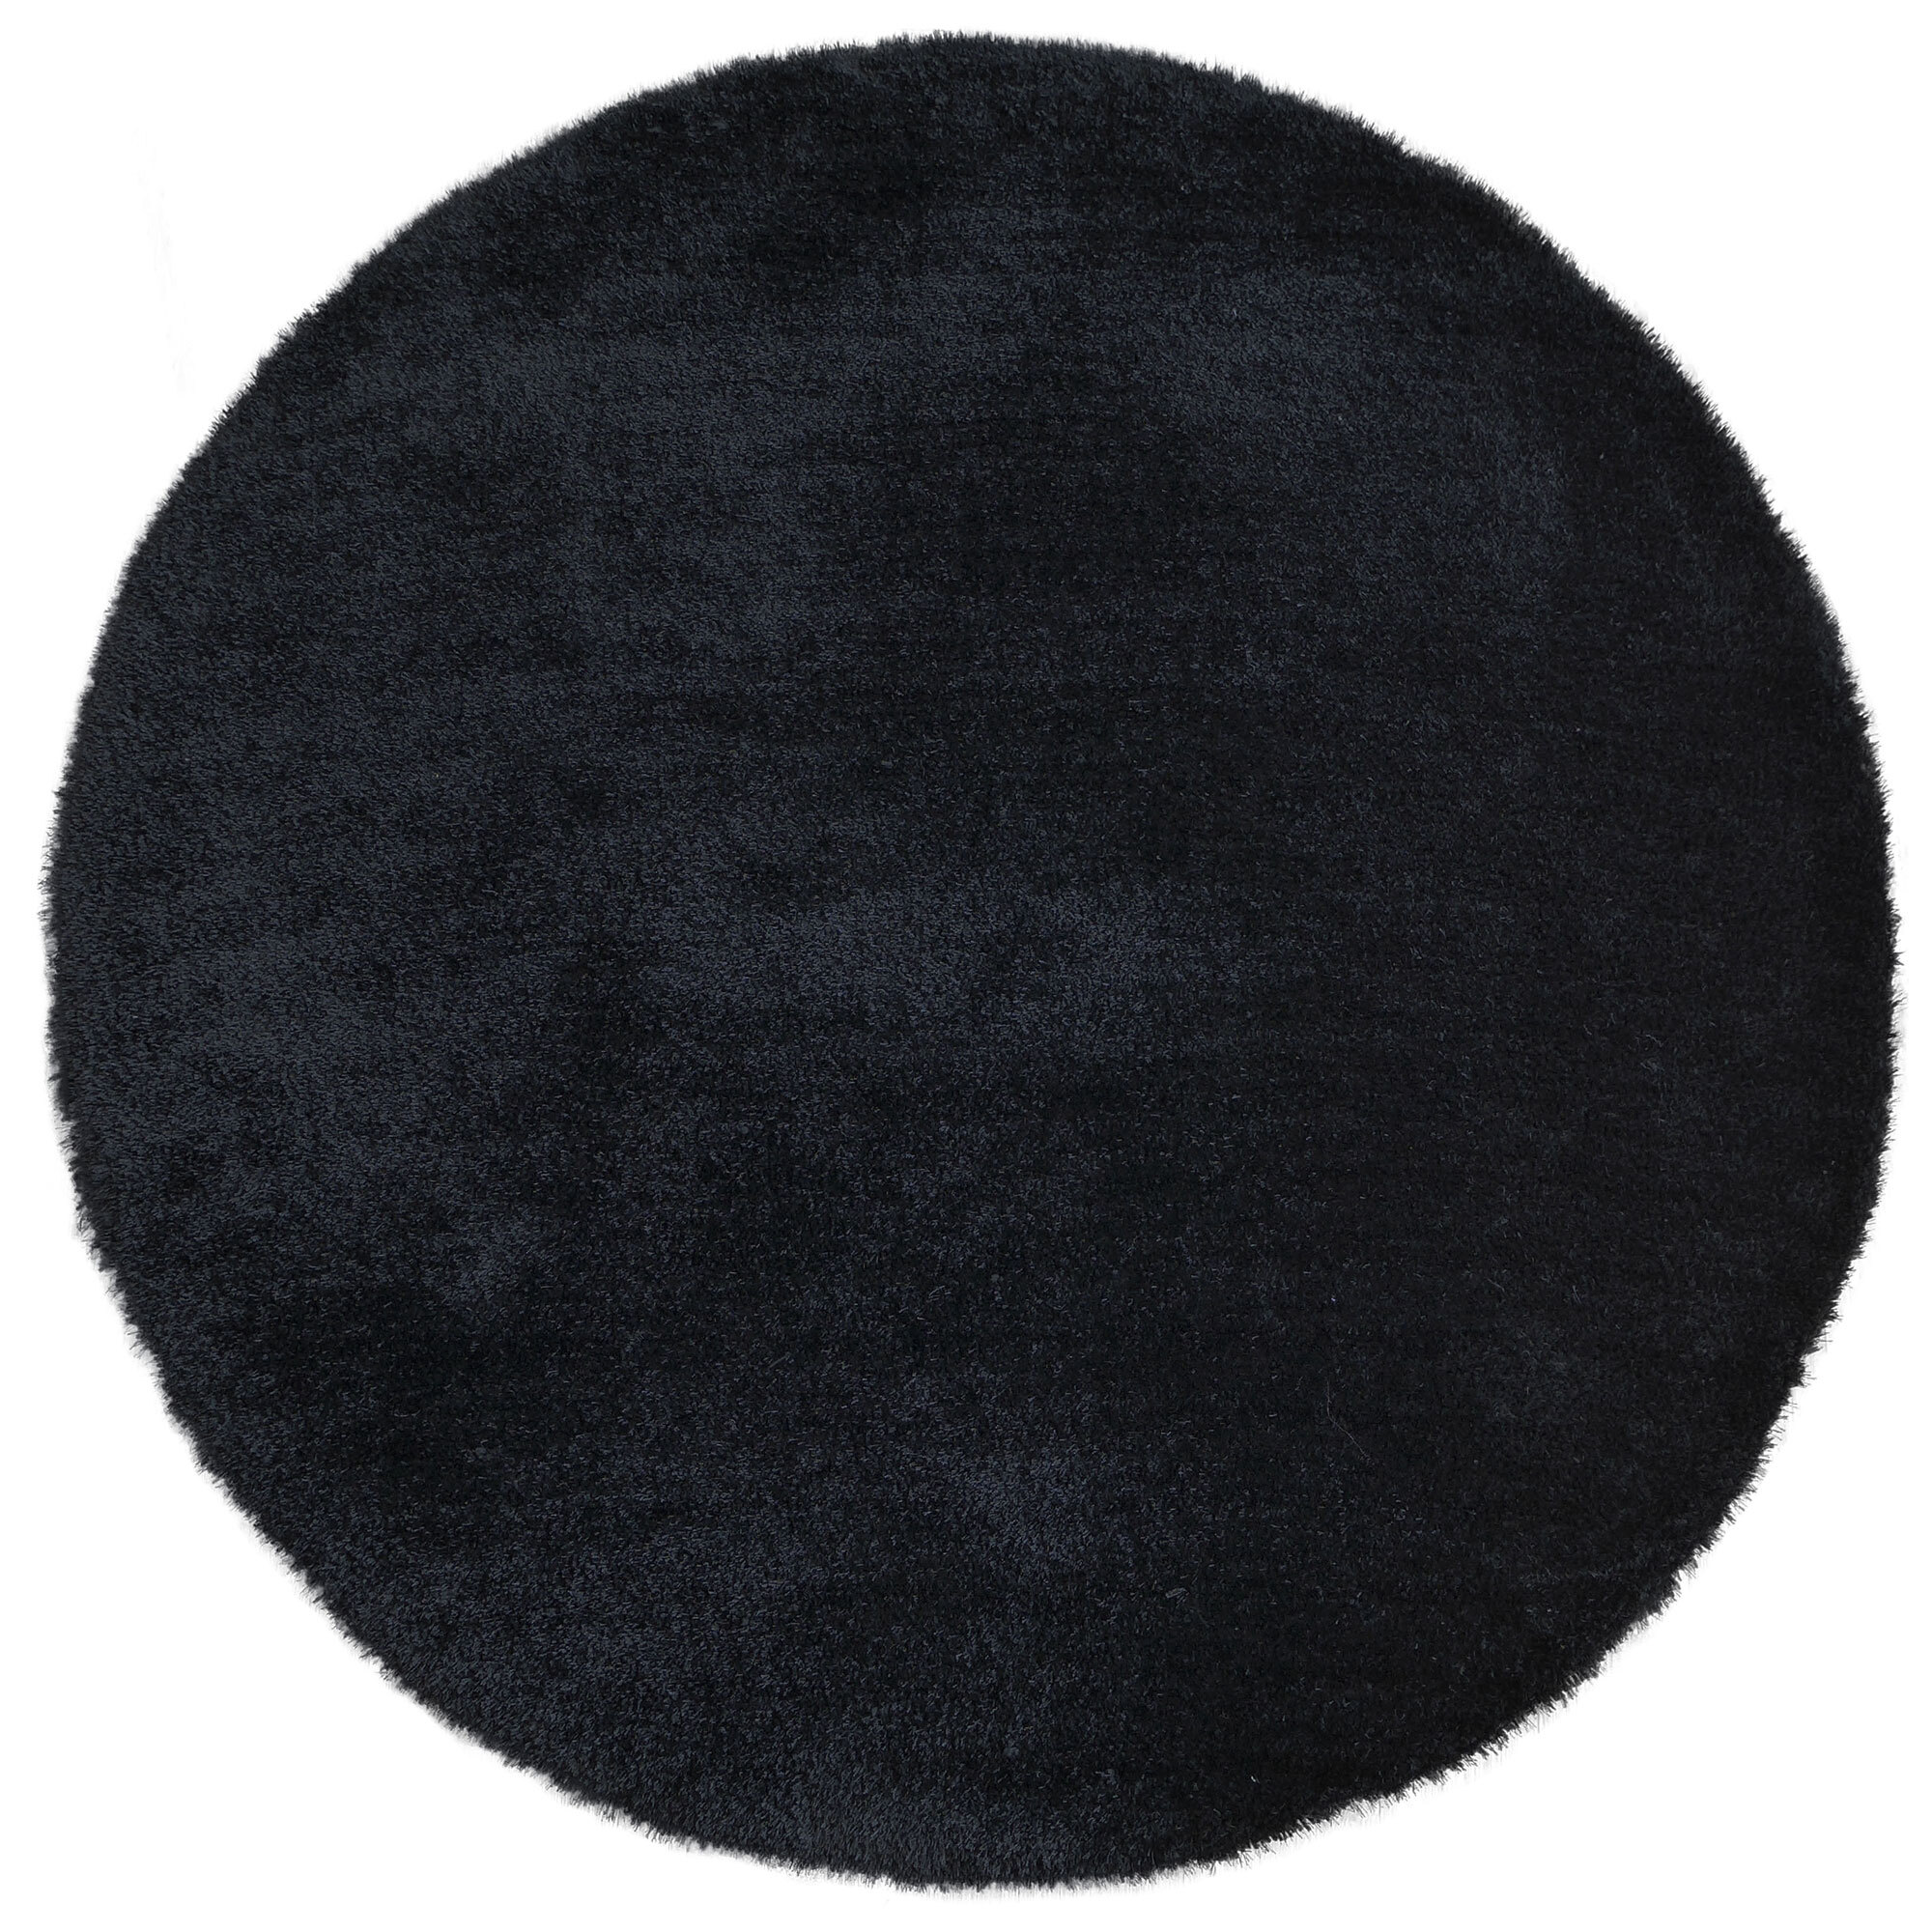 Luxe Plain Black Shaggy Rug